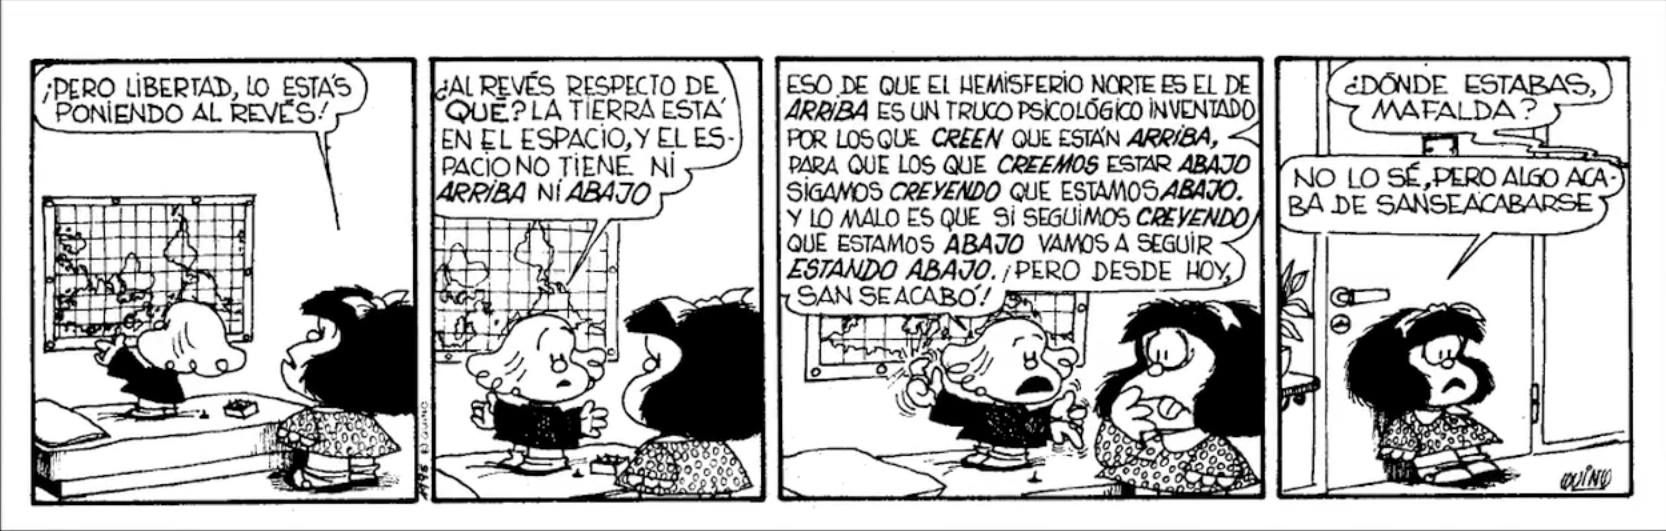 Mafalda, tira cómica (1964-1973) de Quino